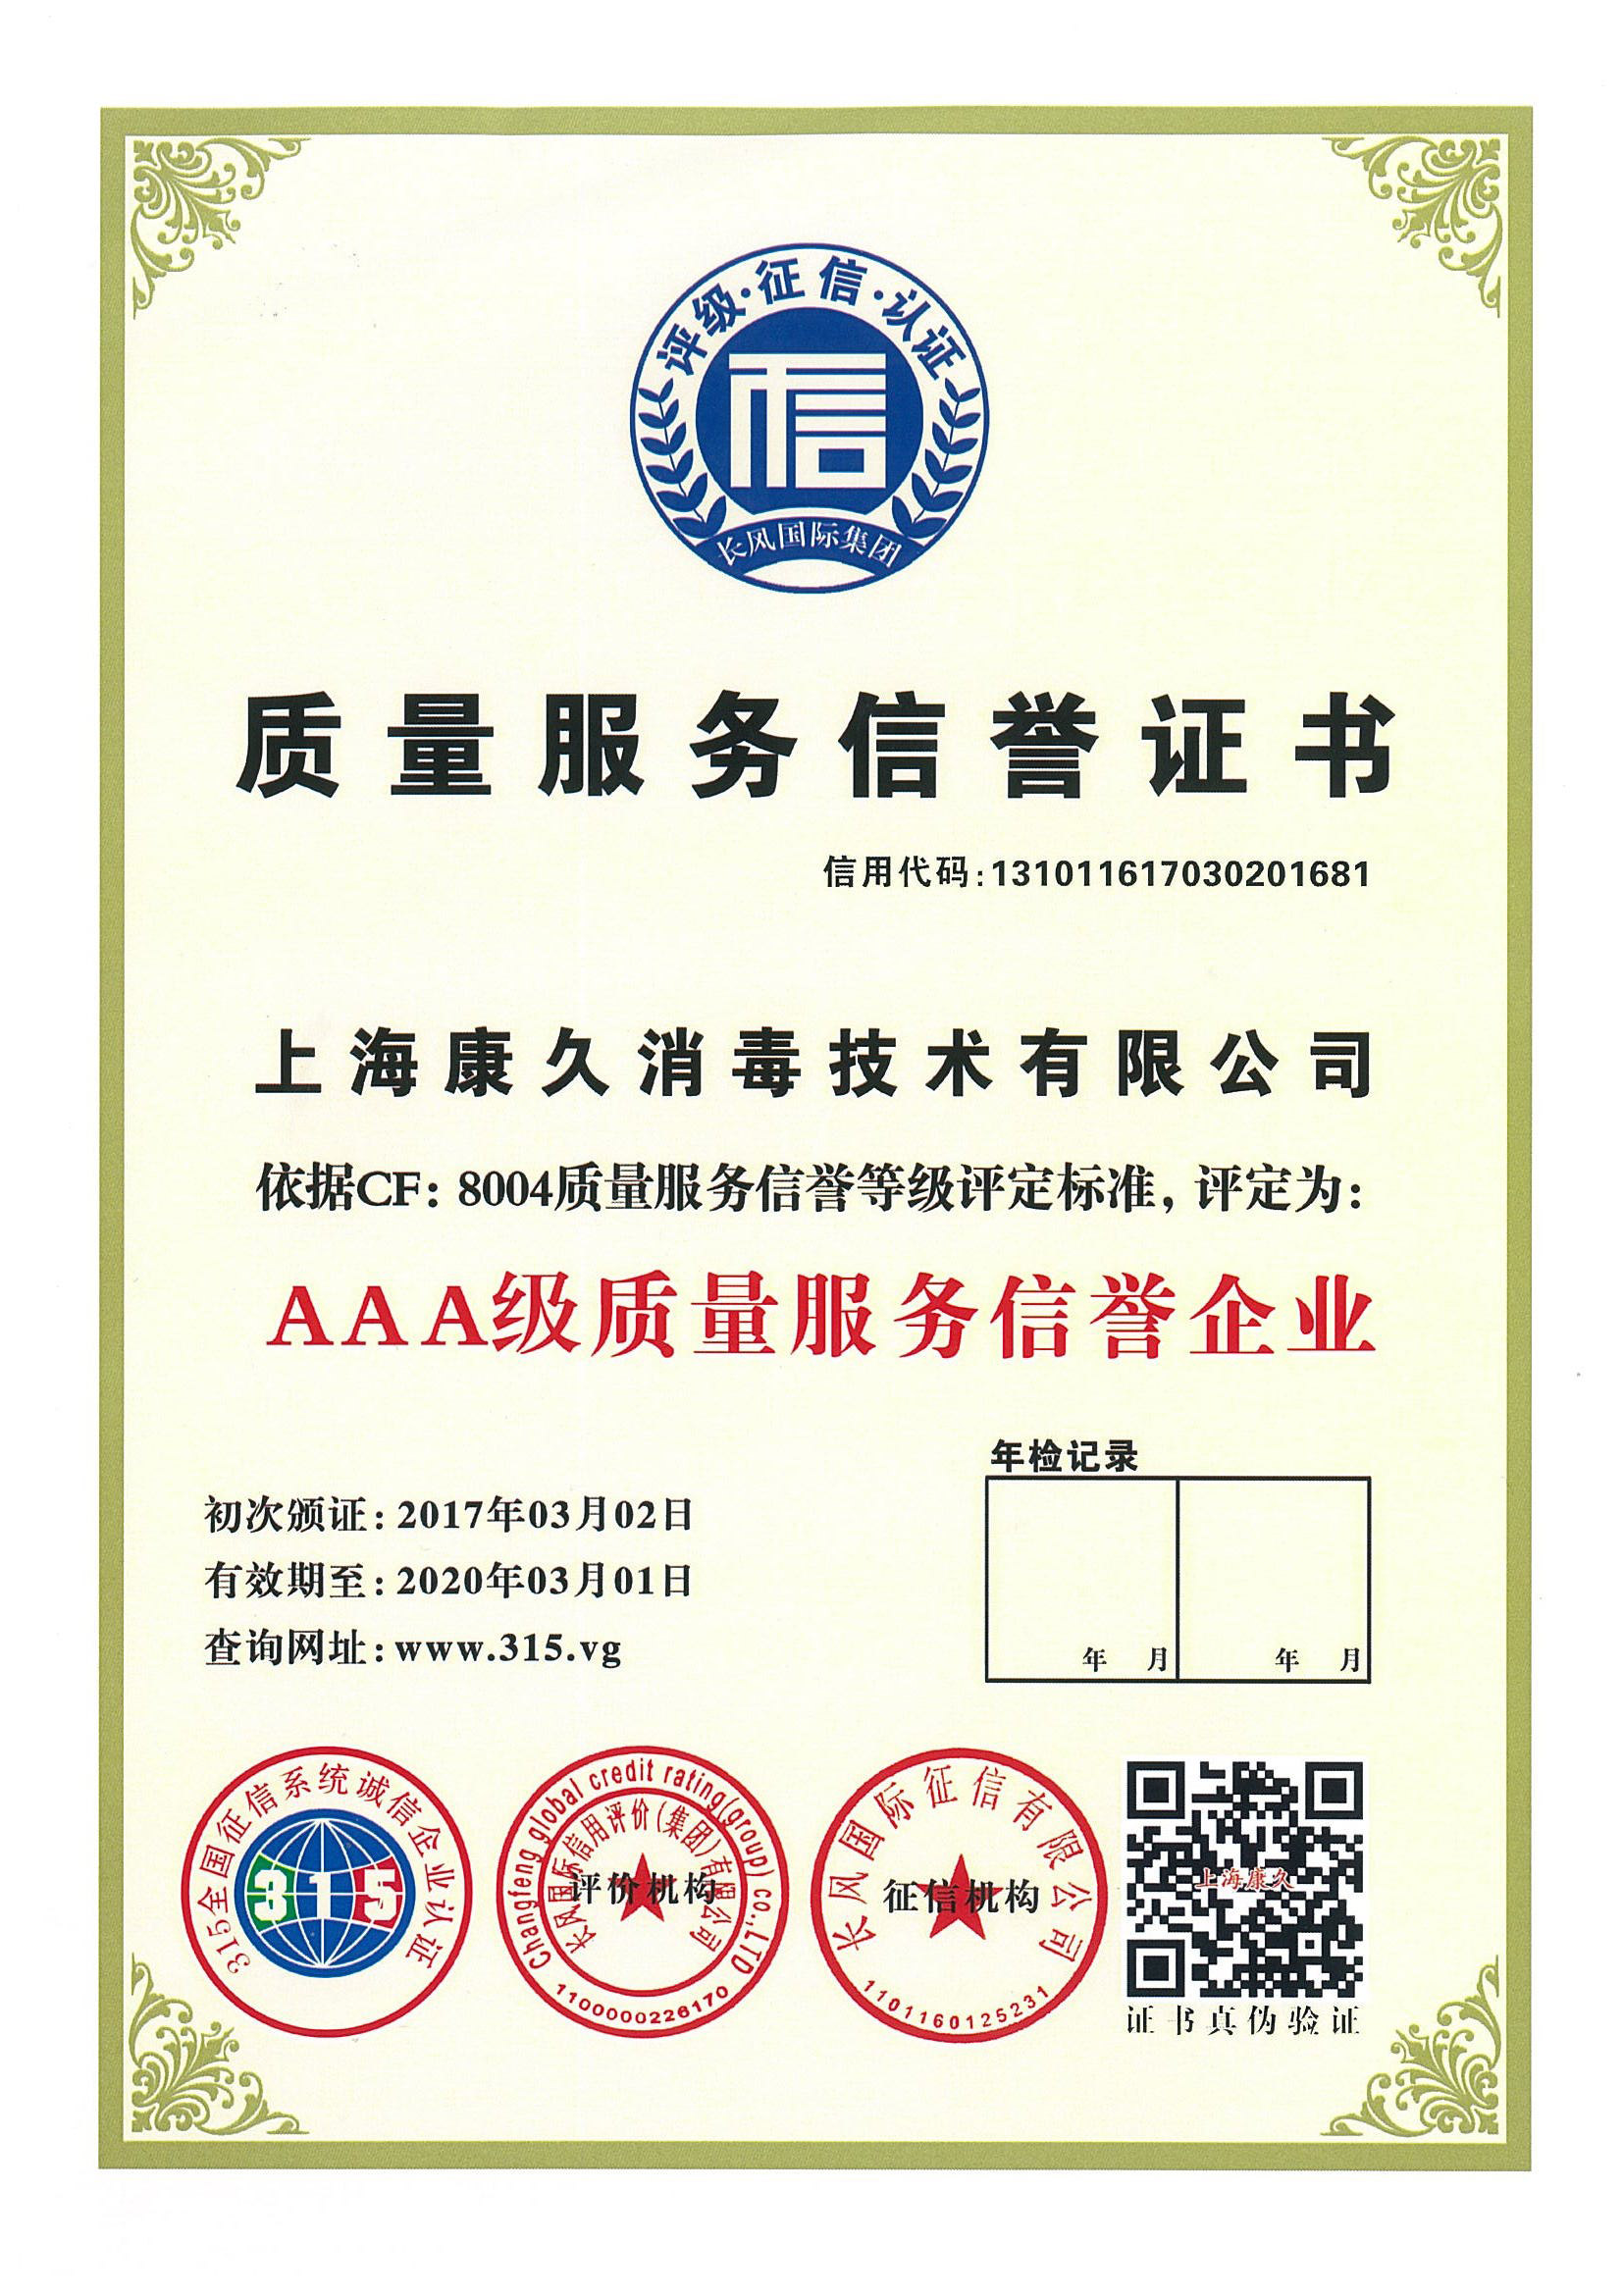 “惠州质量服务信誉证书